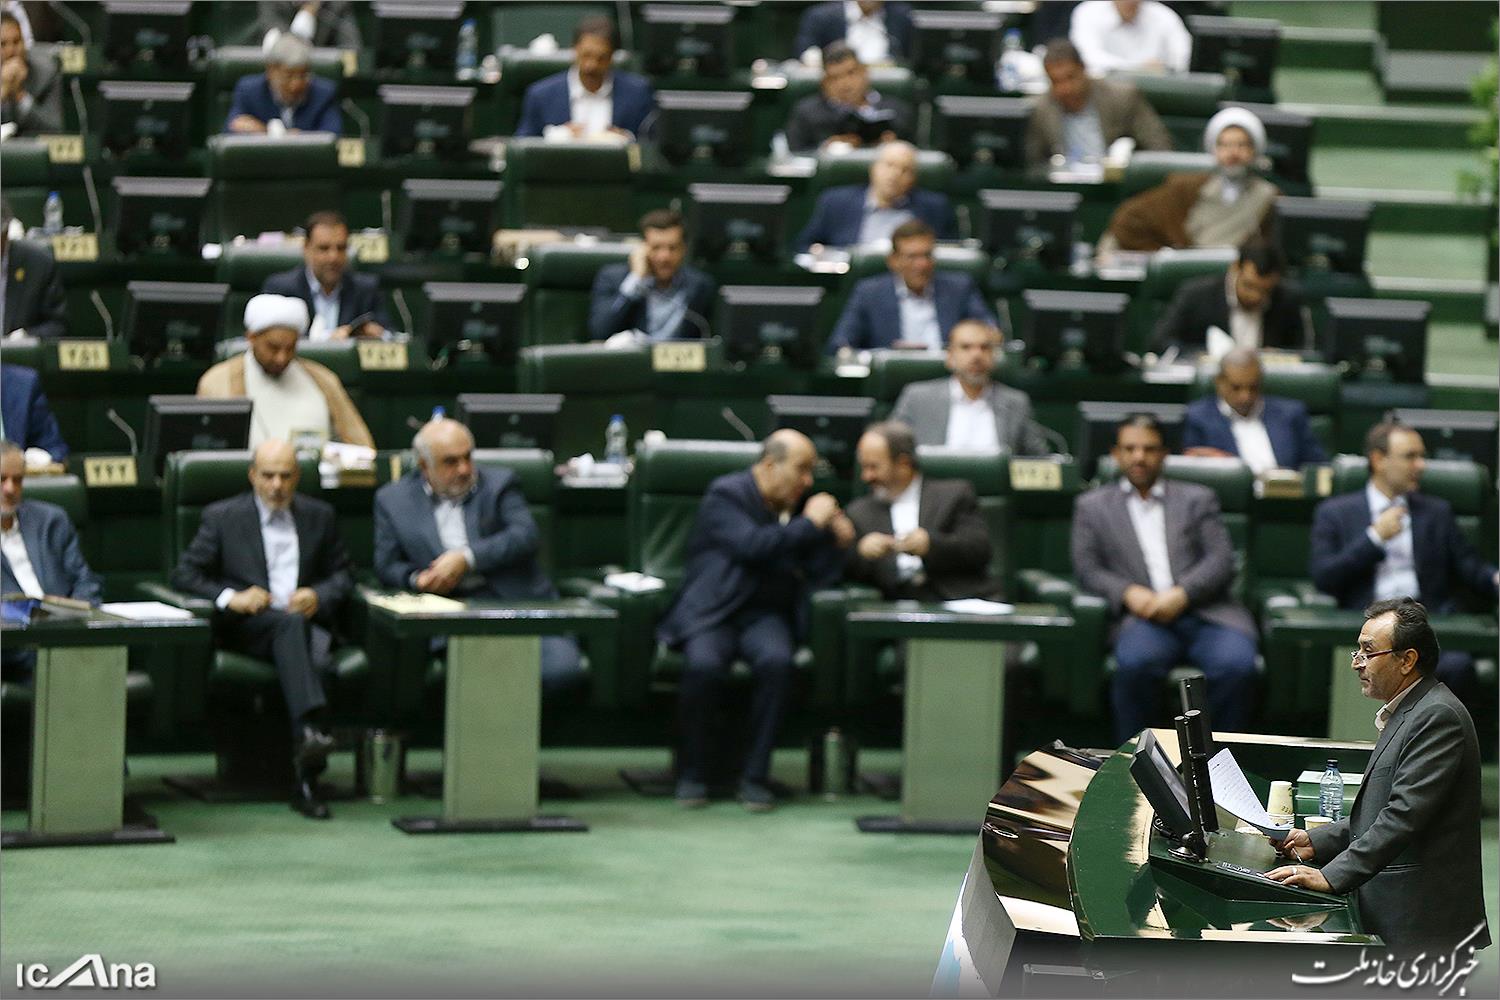 تصاویر ورود حسن روحانی و نمایندگان به مجلس شورای اسلامی